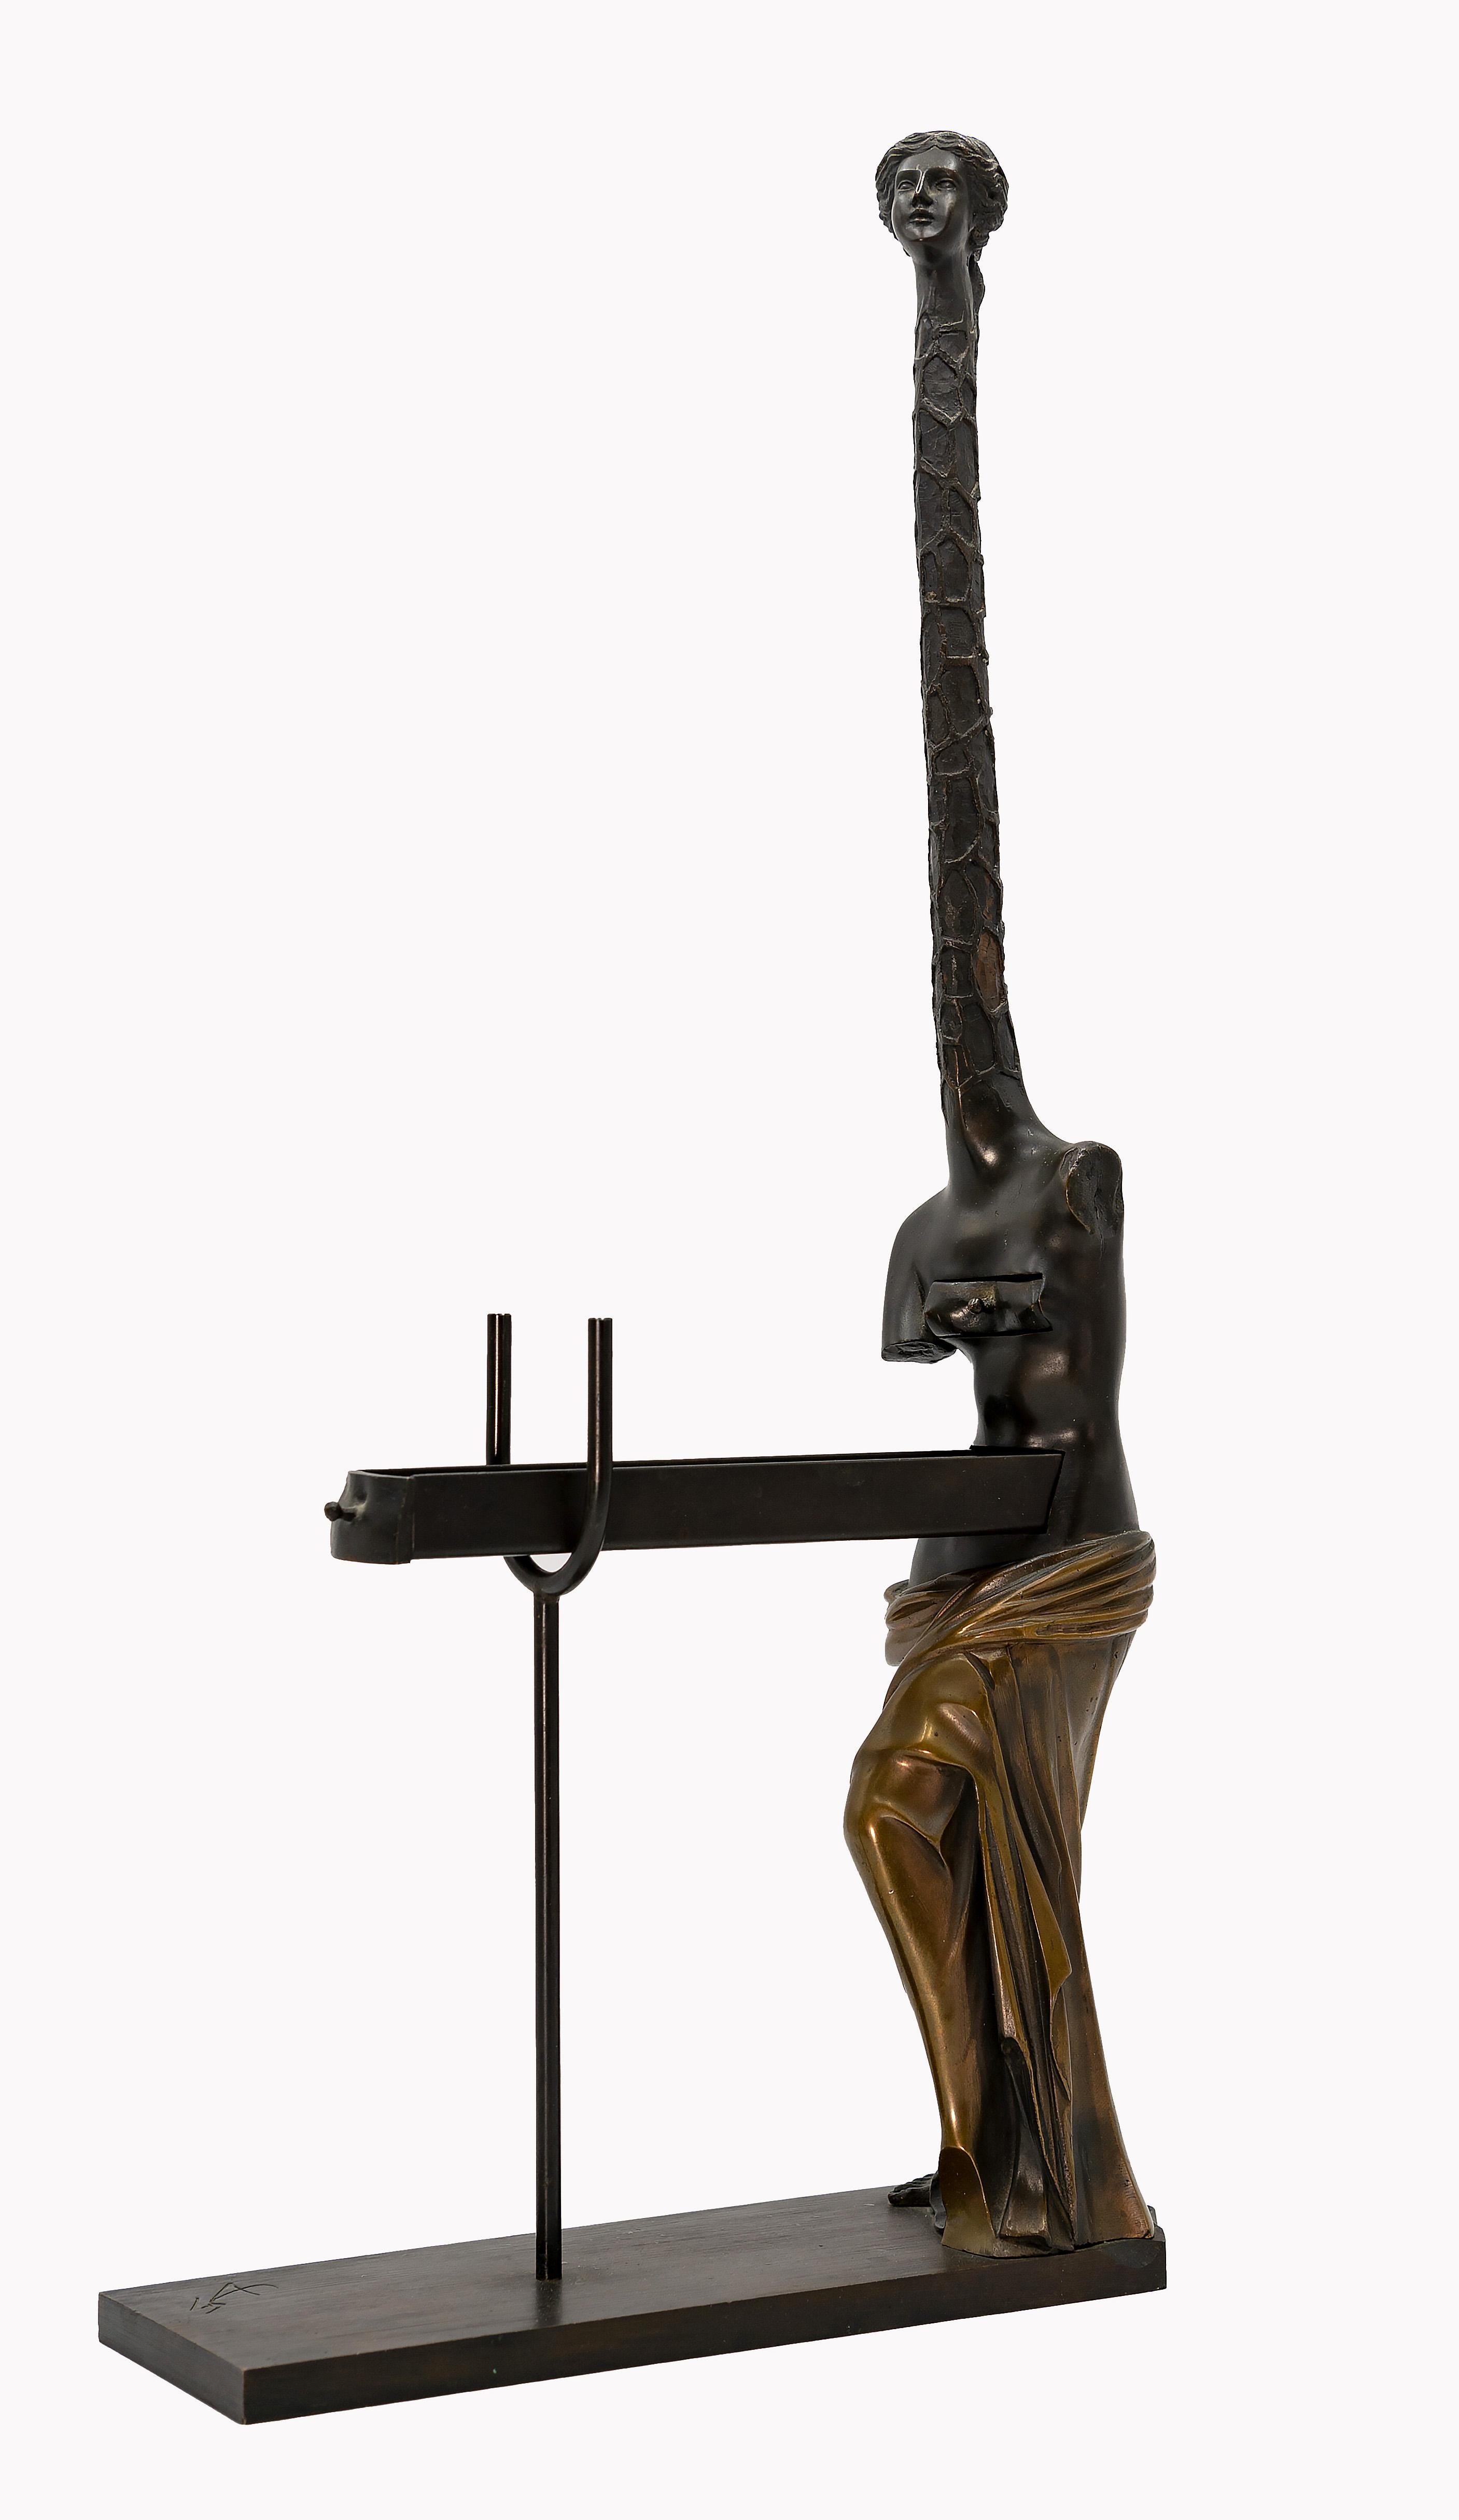 Salvador Dalí Figurative Sculpture - Femme Giraffe - Bronze Sculpture attr. to Salvador Dalì - 1973